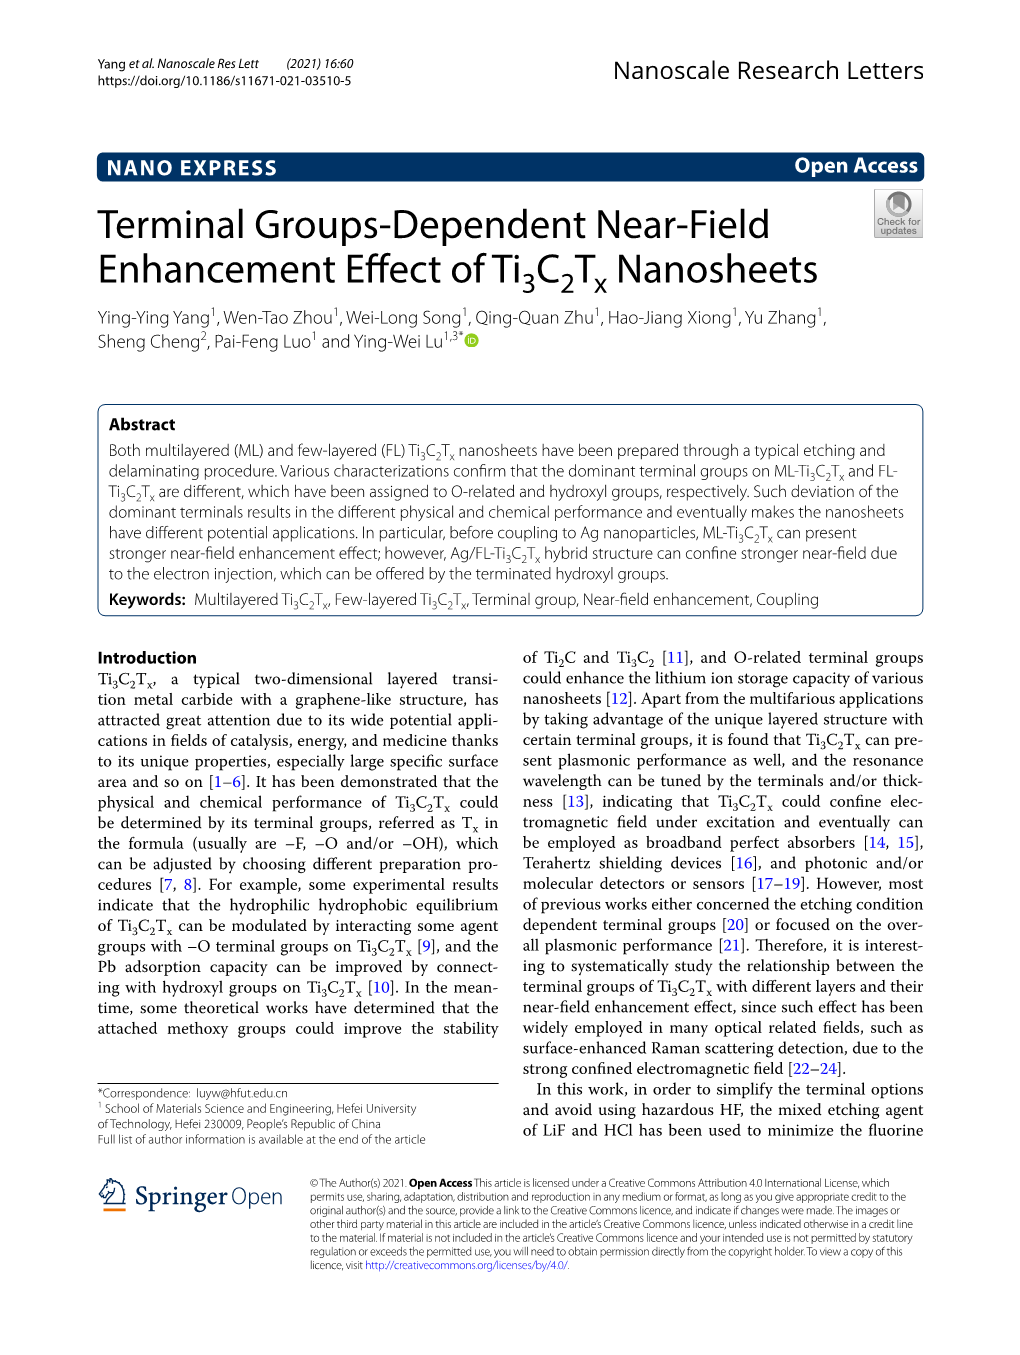 Terminal Groups-Dependent Near-Field Enhancement Effect of Ti